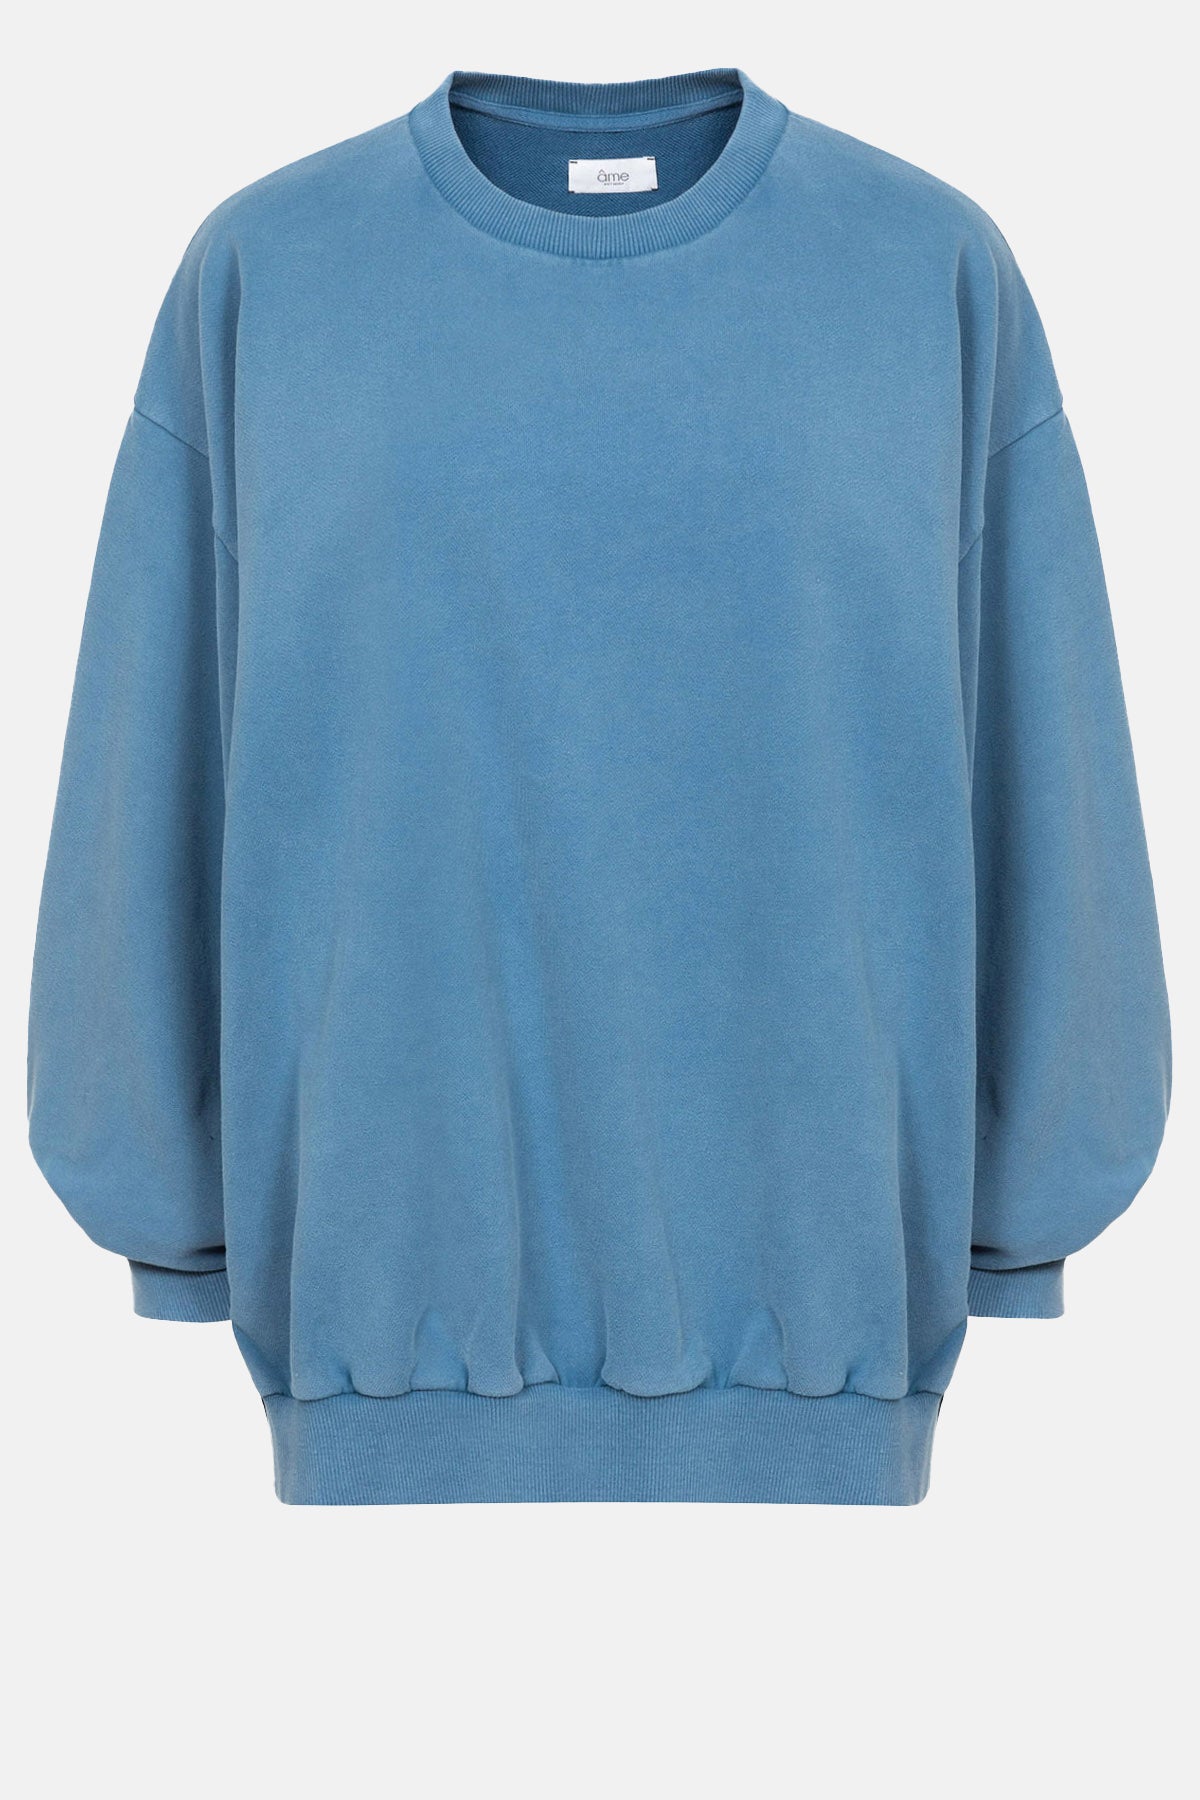  Ulla Oversized Sweatshirt | Bleu Vintage